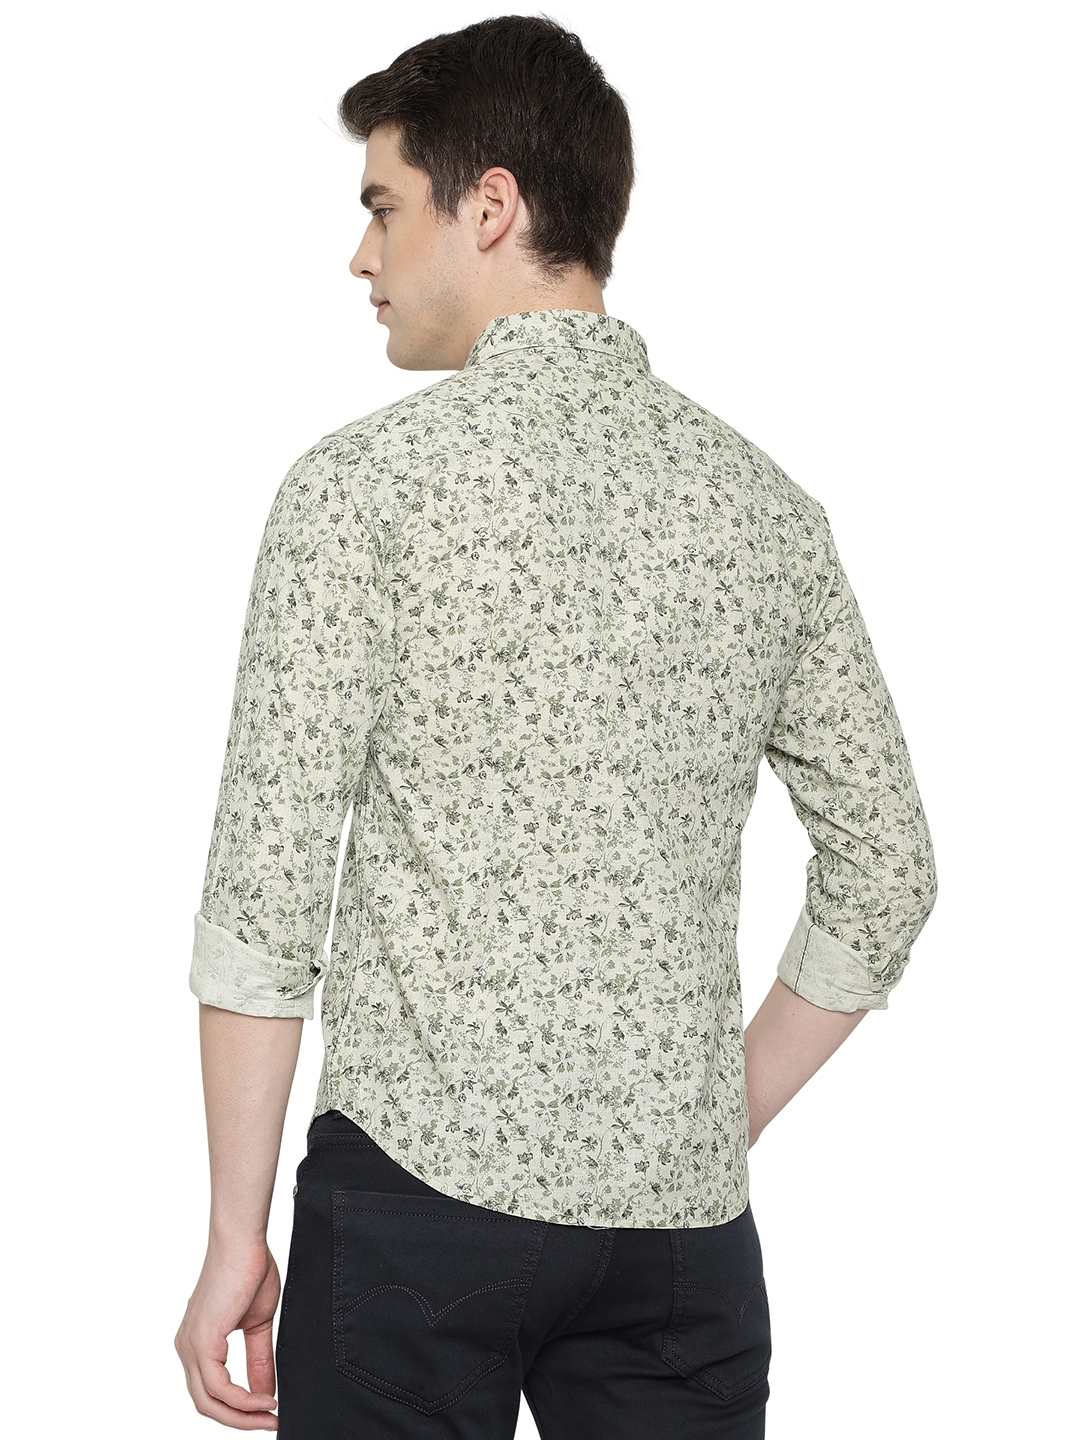 Moss Grey Printed Slim Fit Semi Casual Shirt | Greenfibre